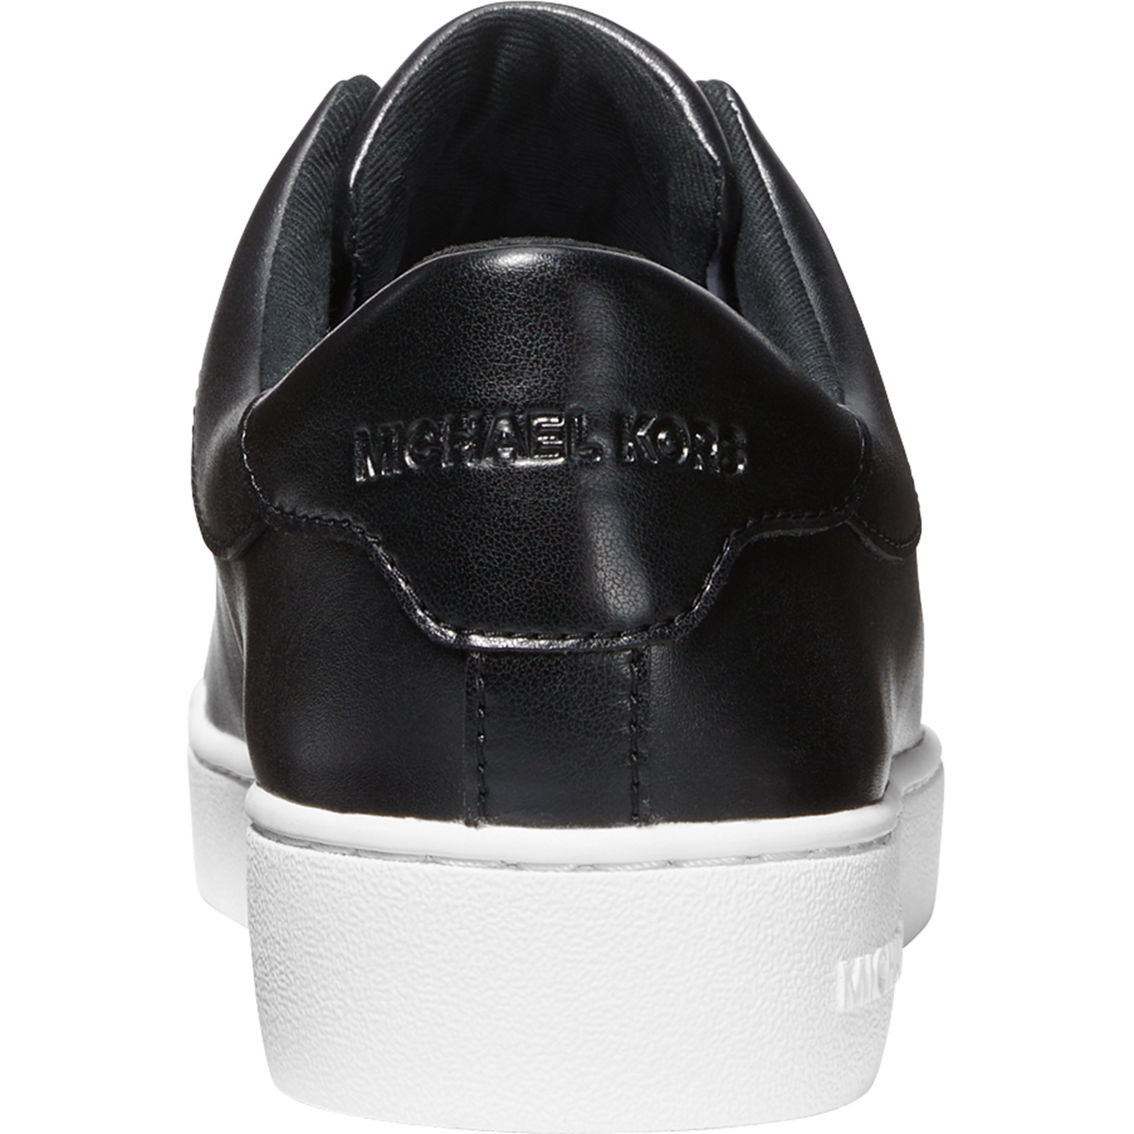 Michael Kors Keaton Zip Slip On Sneakers - Image 4 of 4